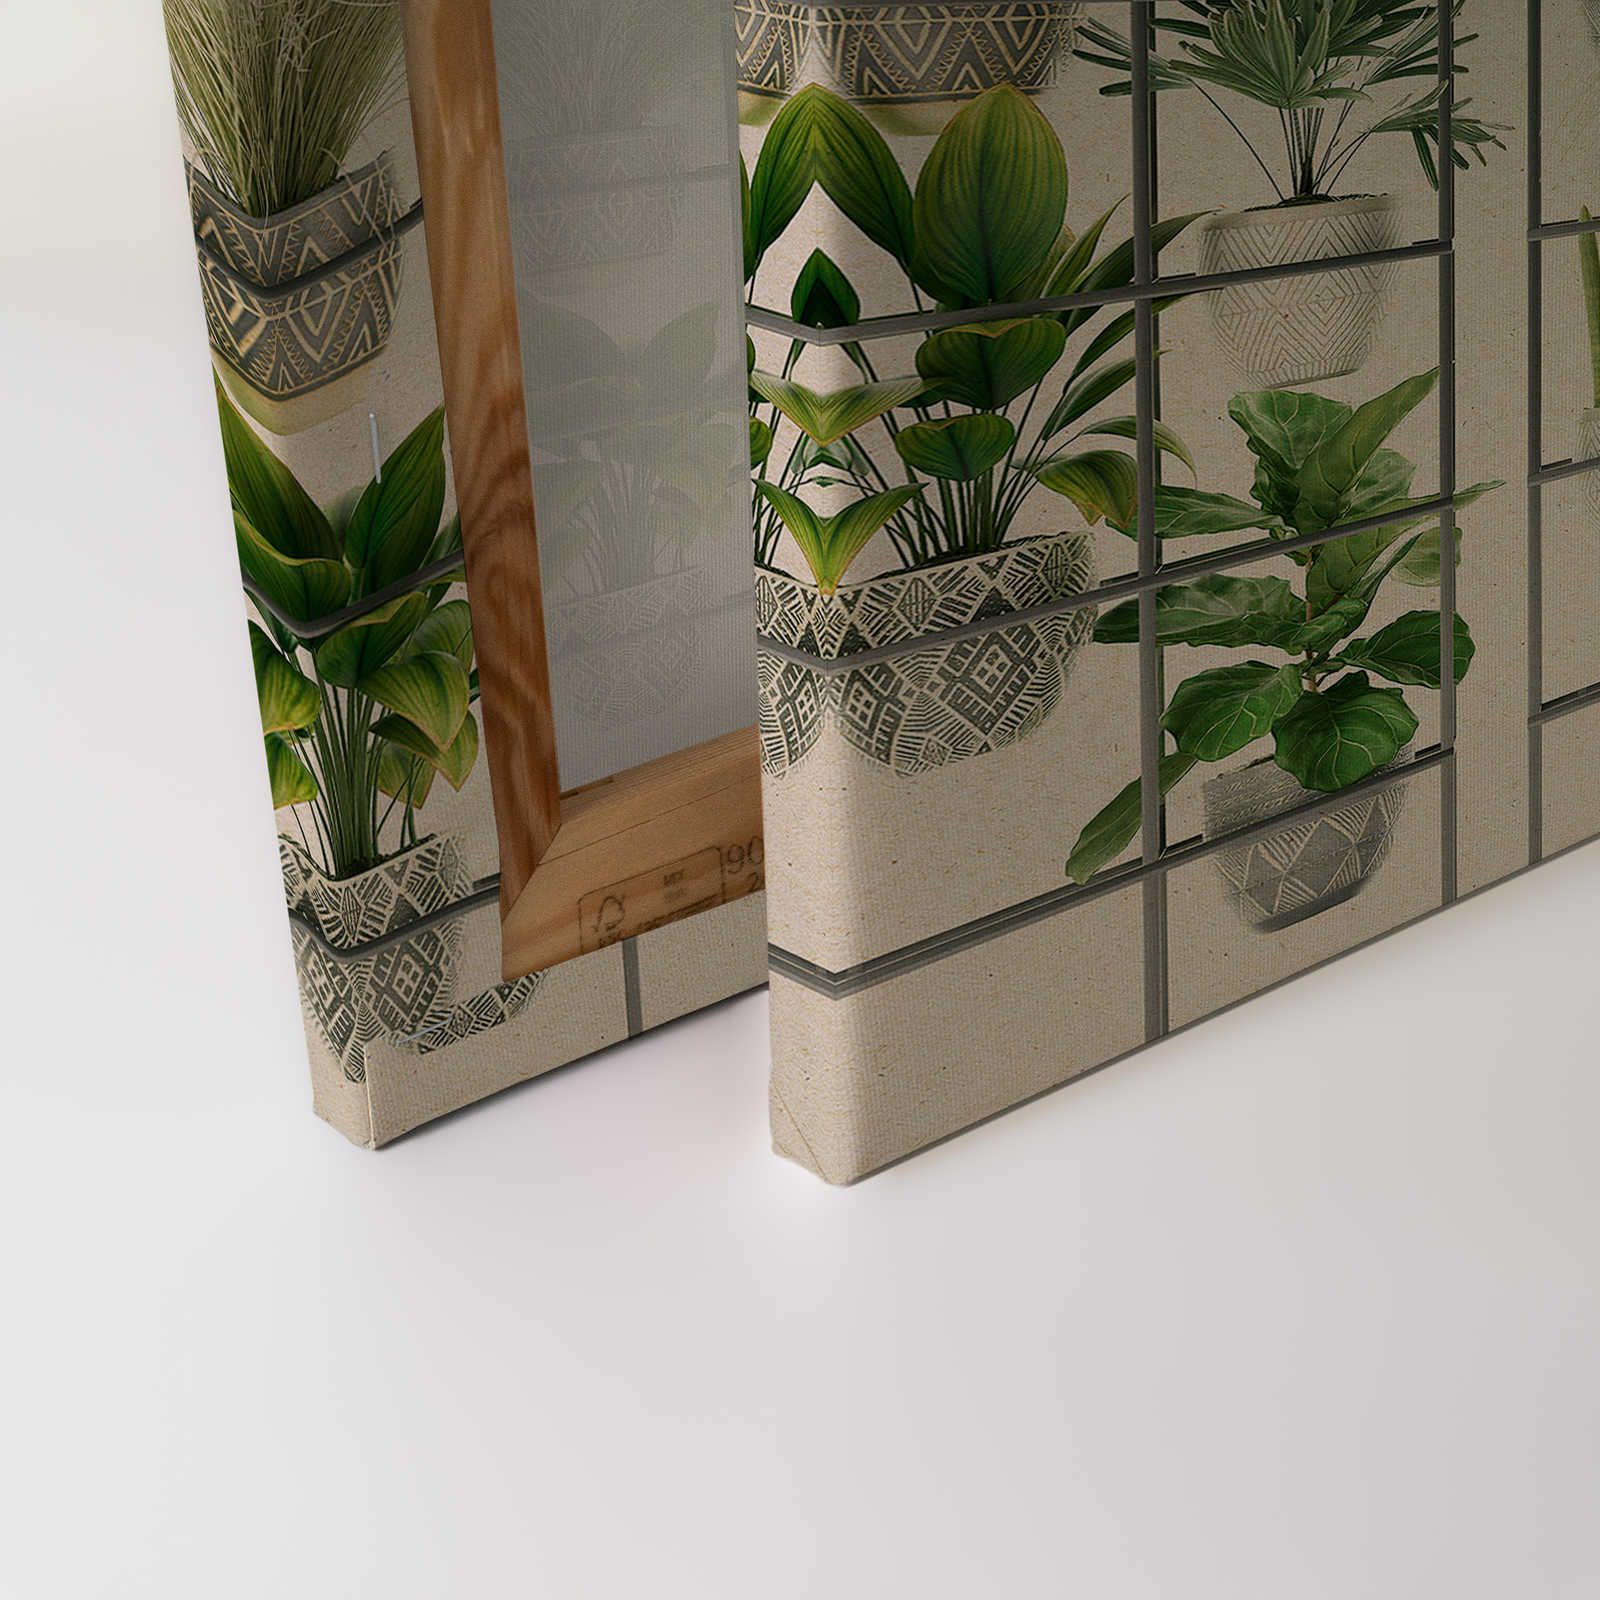             Plant Shop 2 - Cuadro en lienzo moderno muro de plantas en verde y gris - 0,90 m x 0,60 m
        